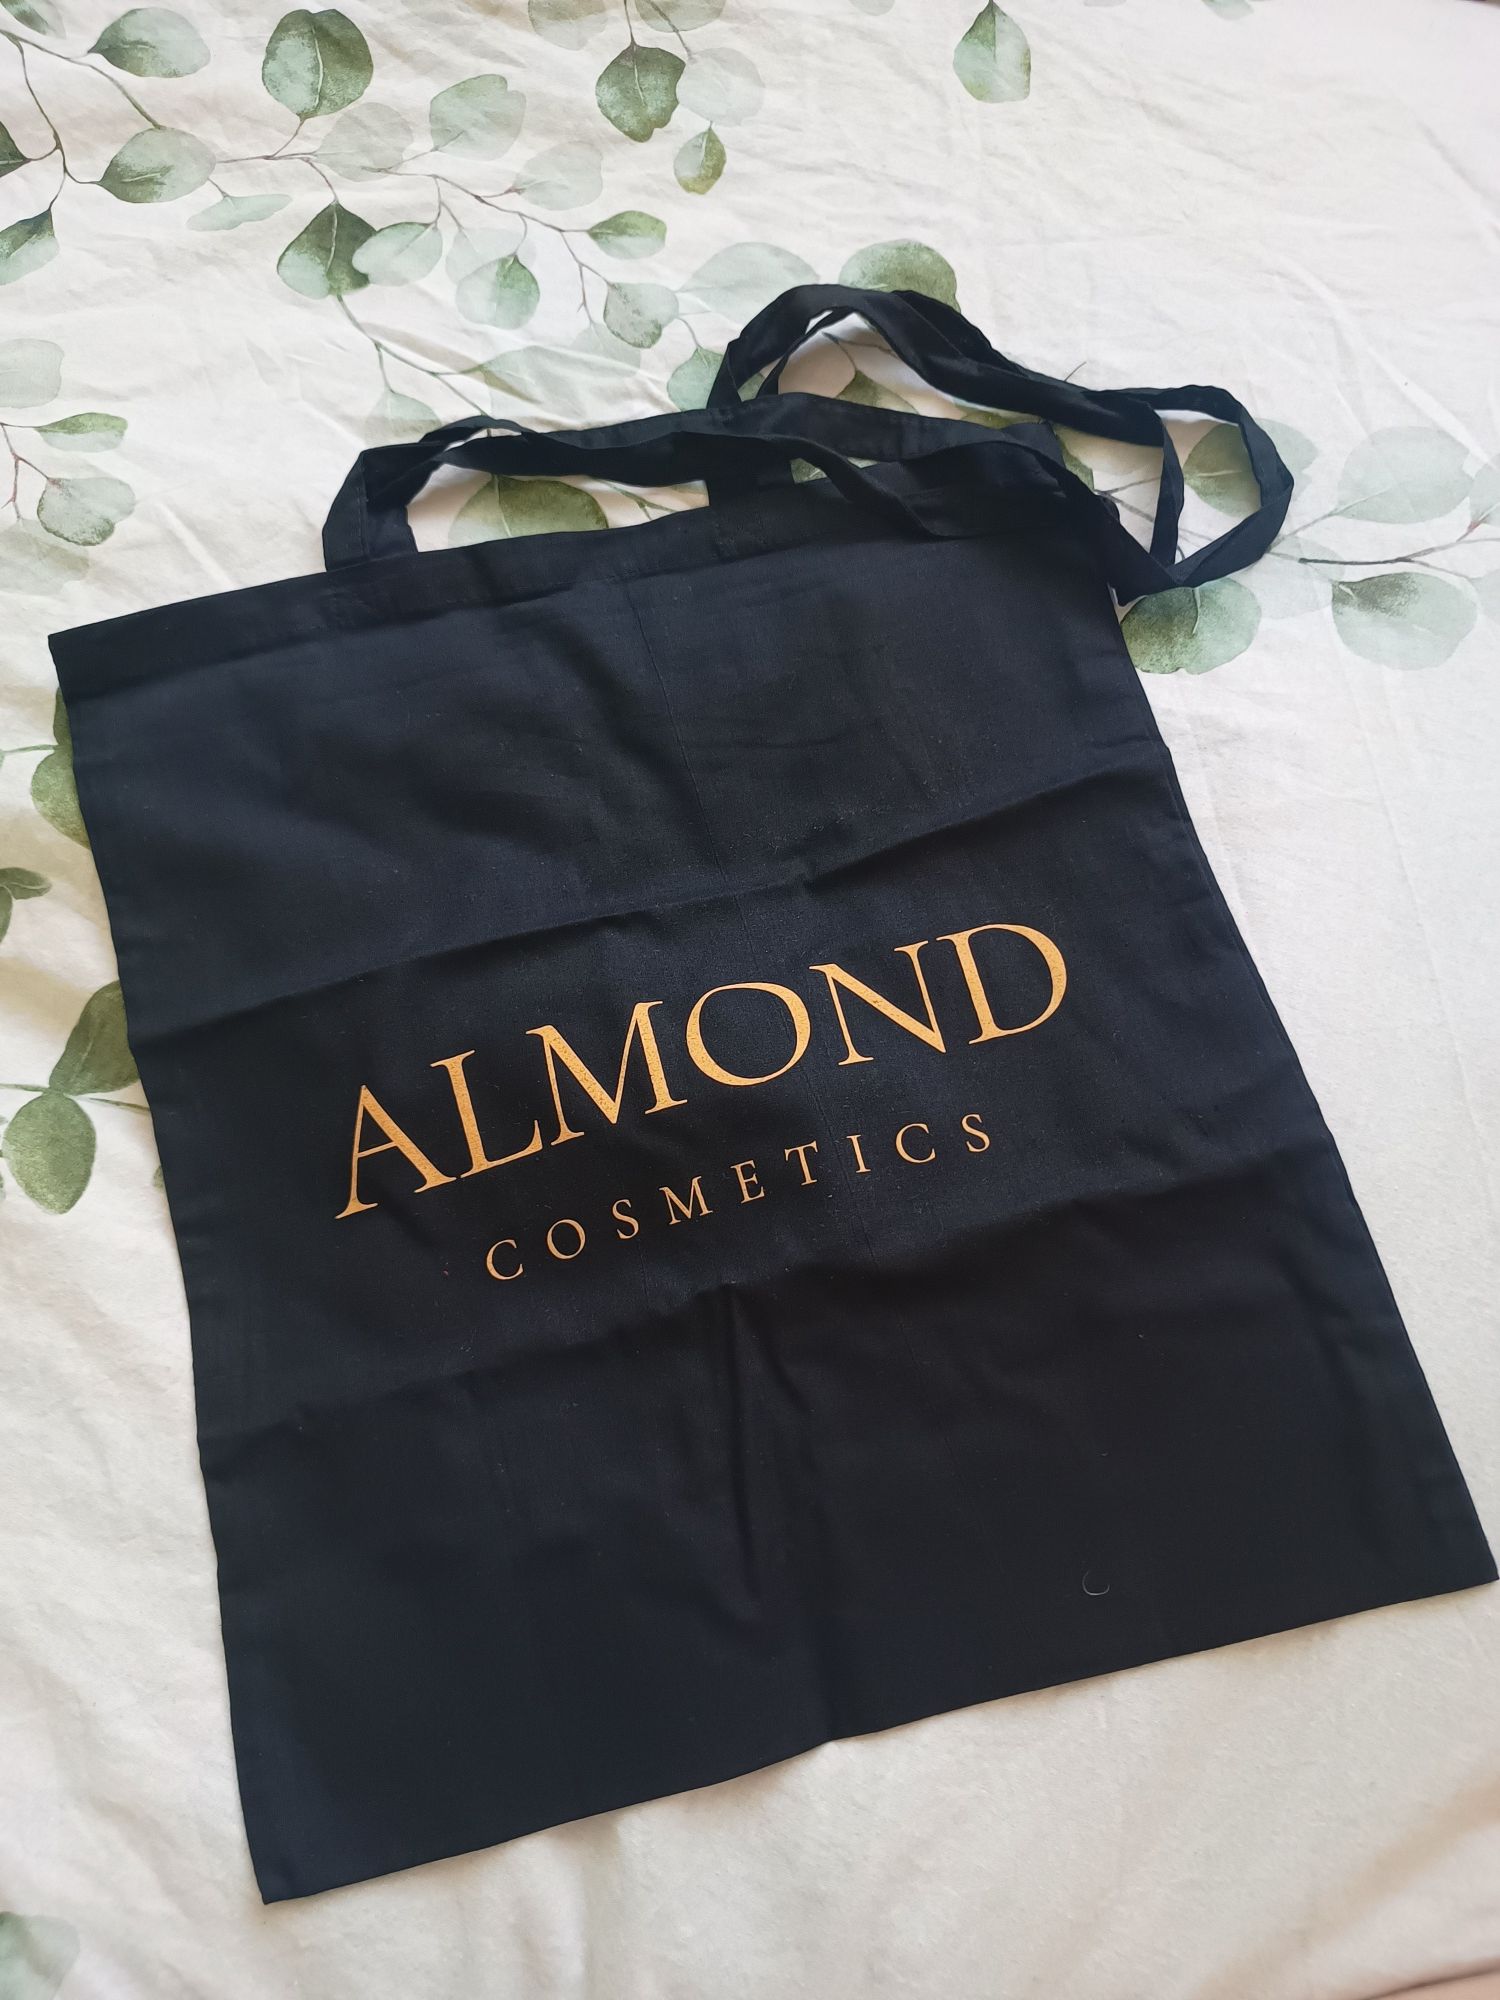 Zestaw almond cosmetics do masażu, świece, olejek, torba